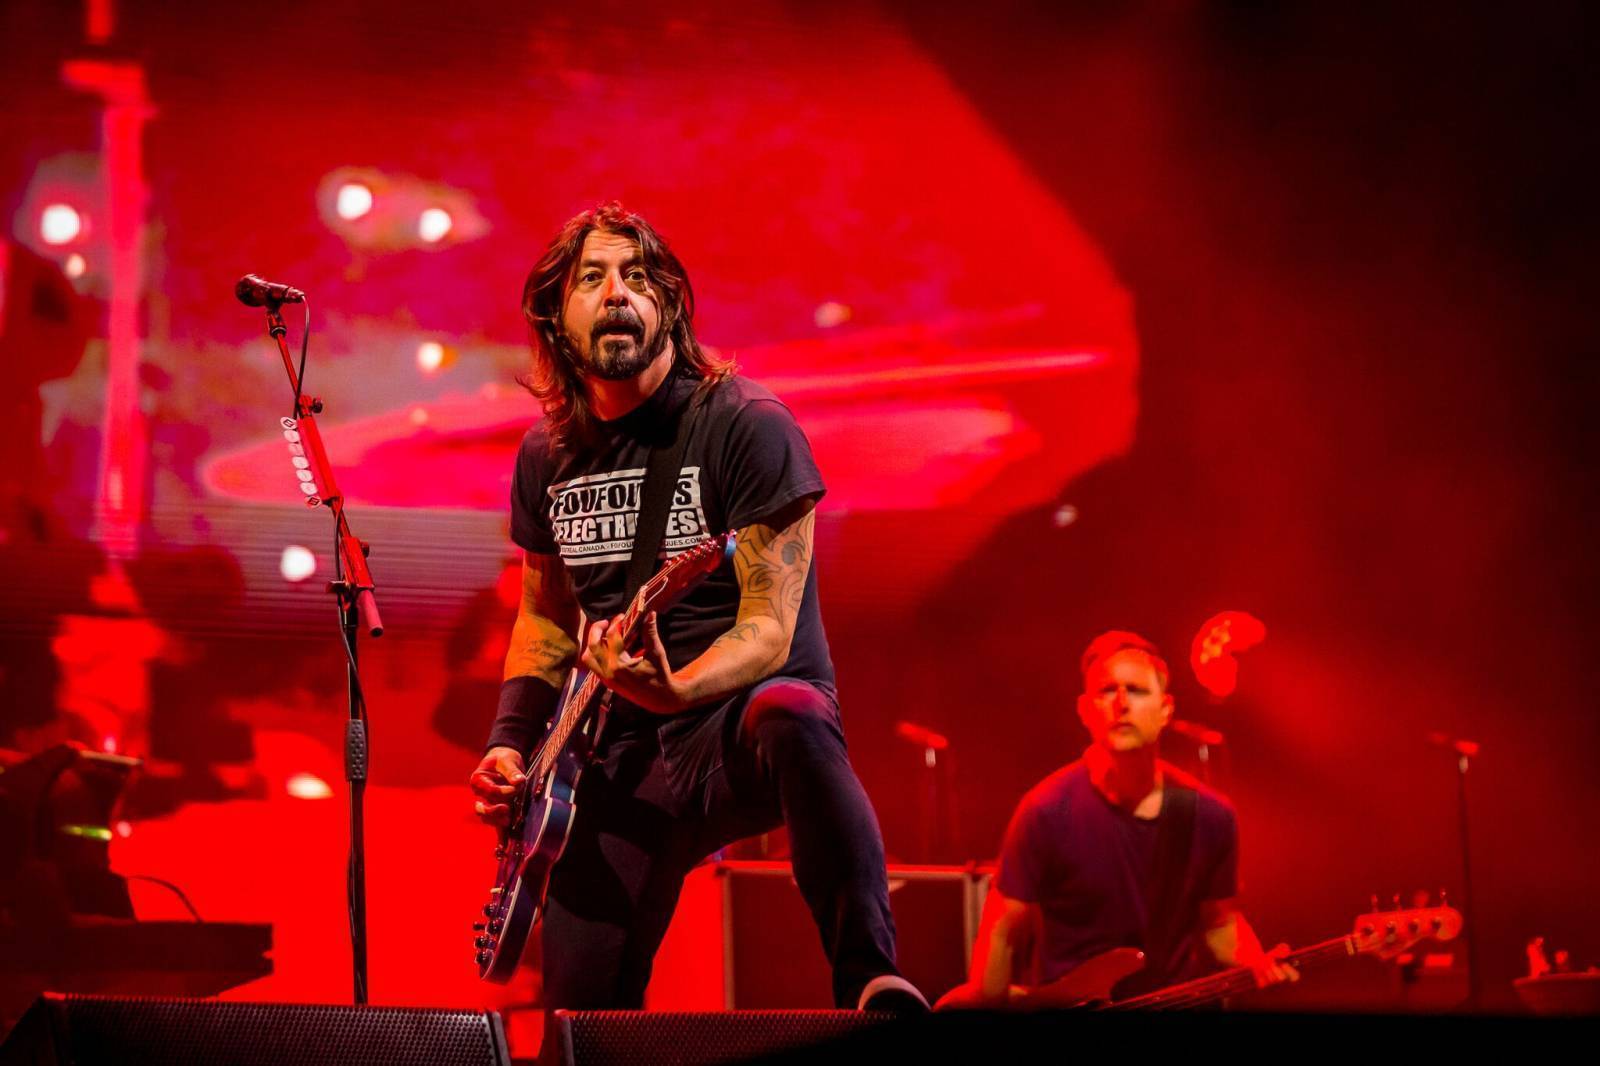 BIZÁR TÝDNE: Foo Fighters přezpívali hit Bee Gees, vzbudili kontroverzní reakce